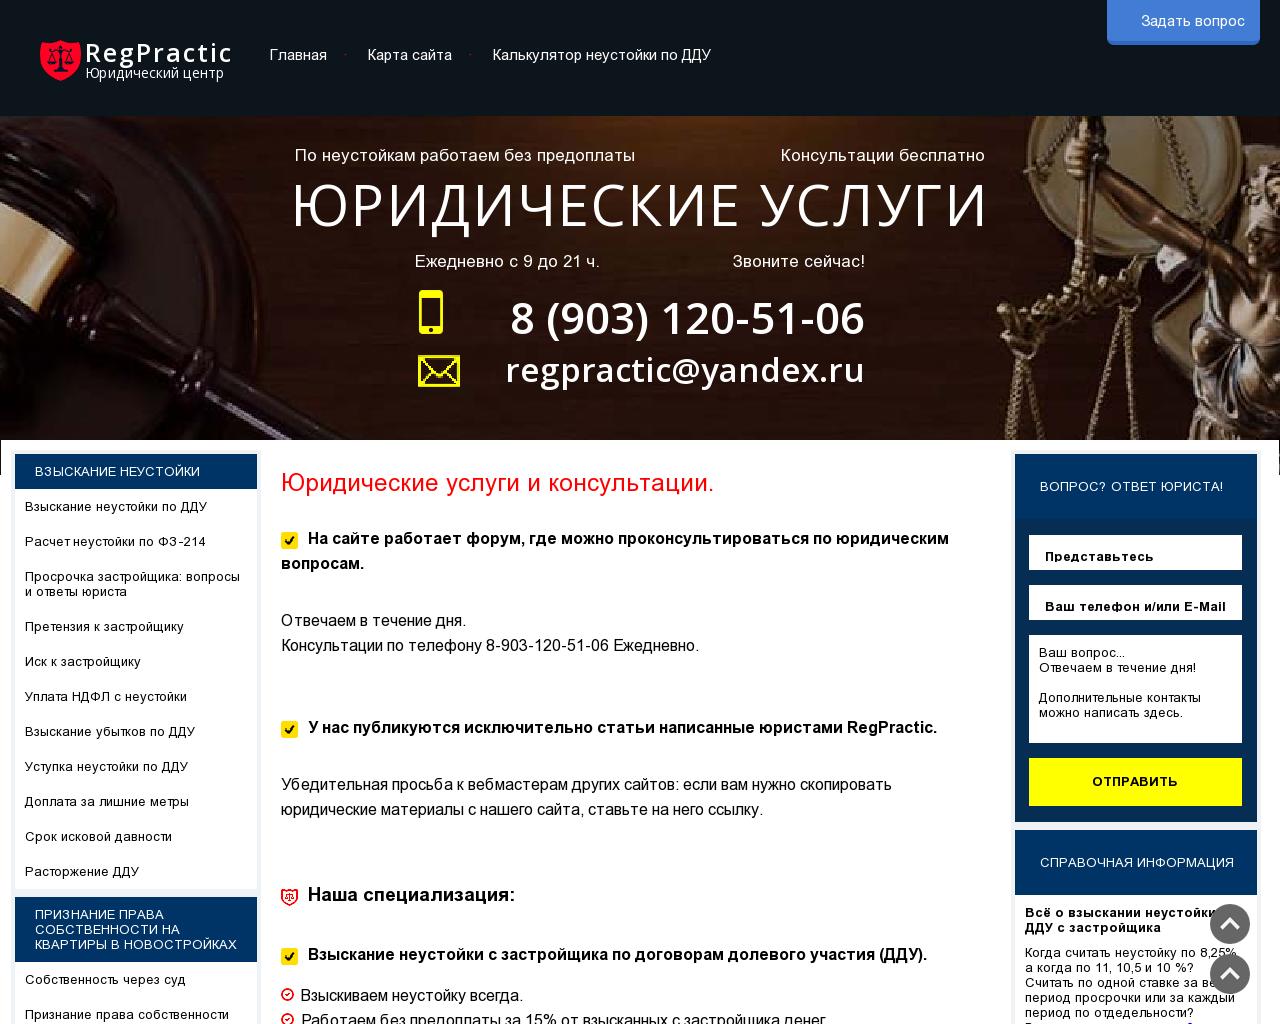 Изображение сайта regpractic.ru в разрешении 1280x1024